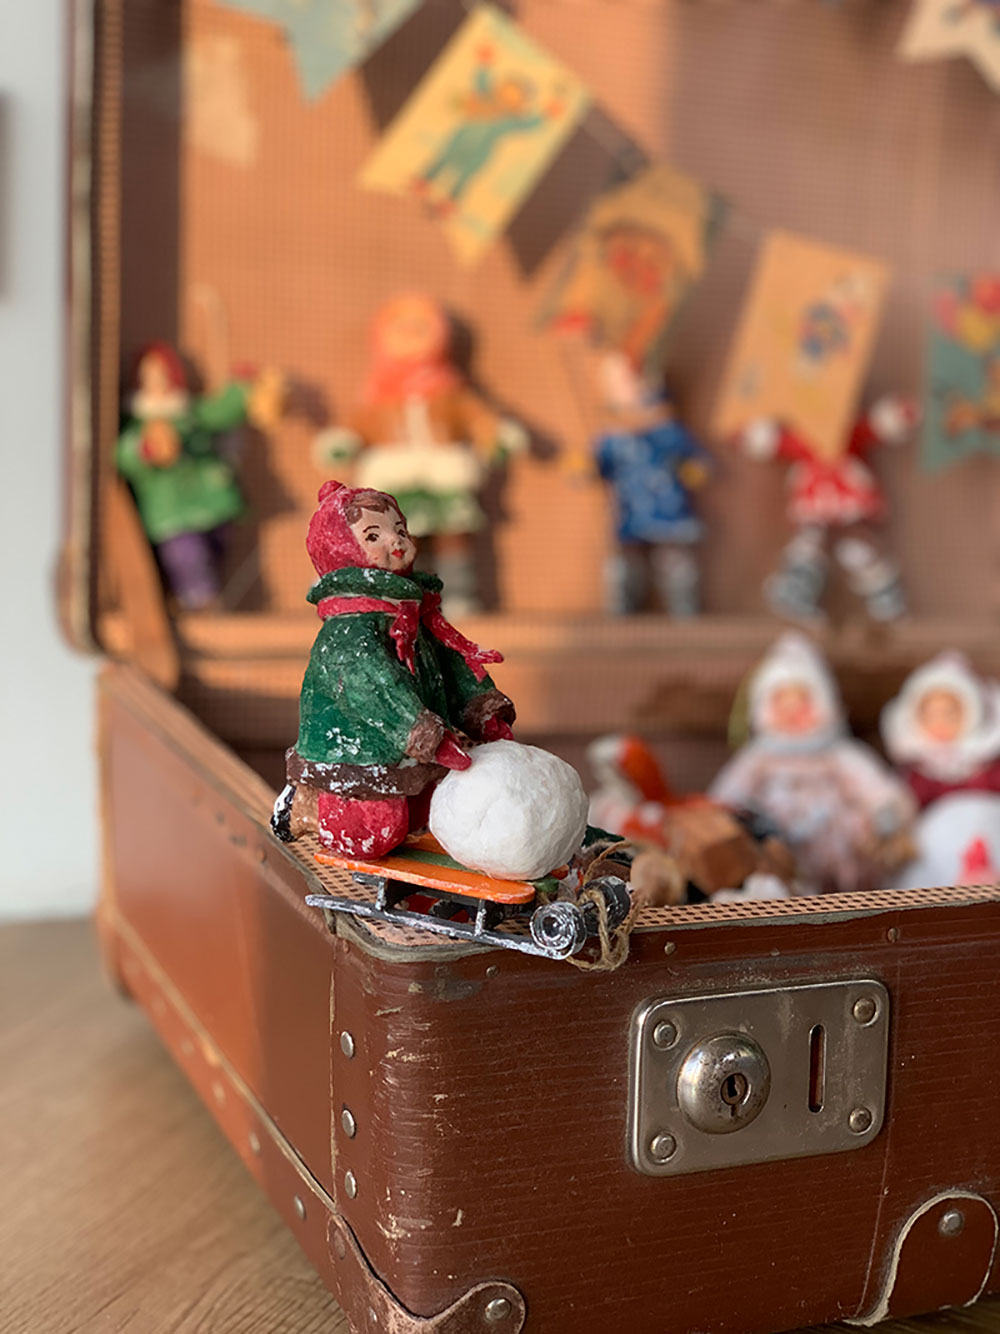 Елочная игрушка в виде девочки с санками на фоне открытого чемодана.